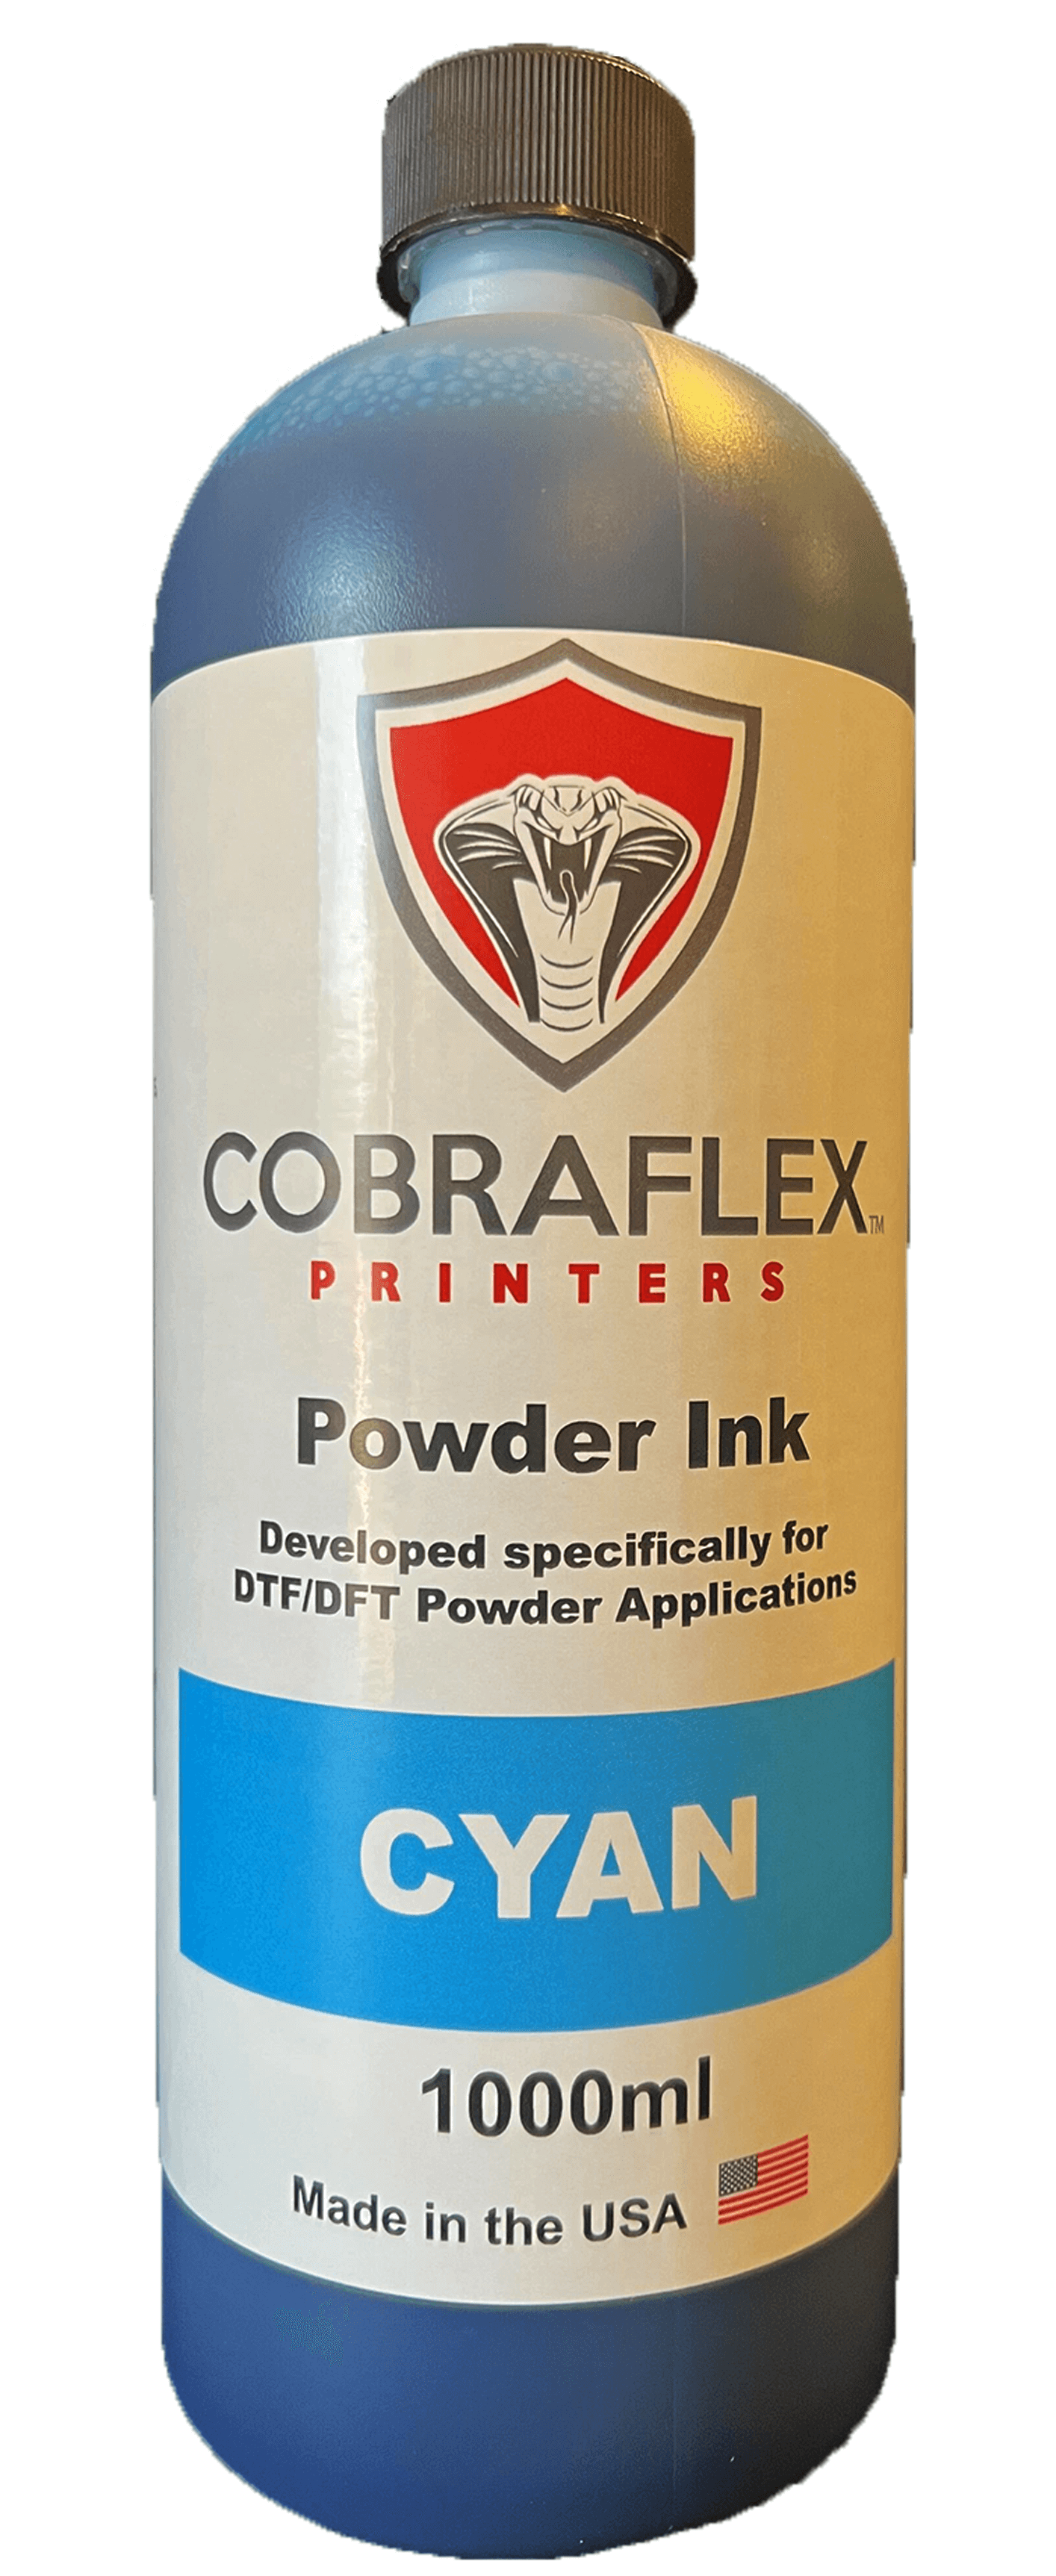 Cobraflex Cyan powder ink